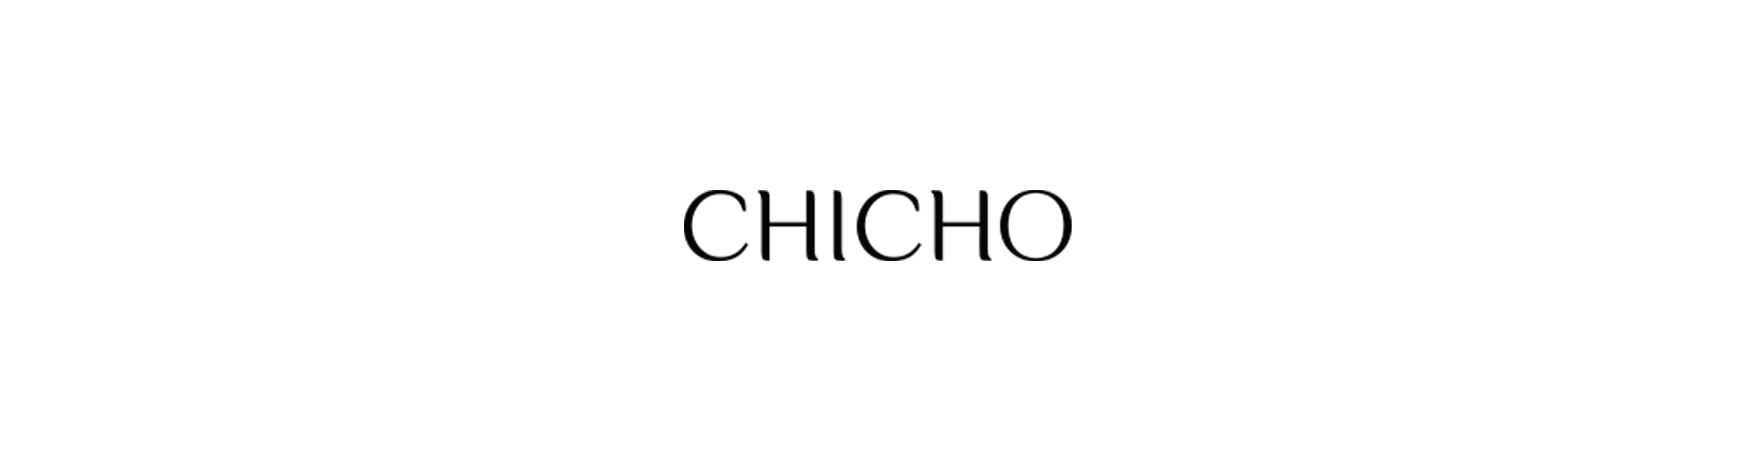 تشيتشو